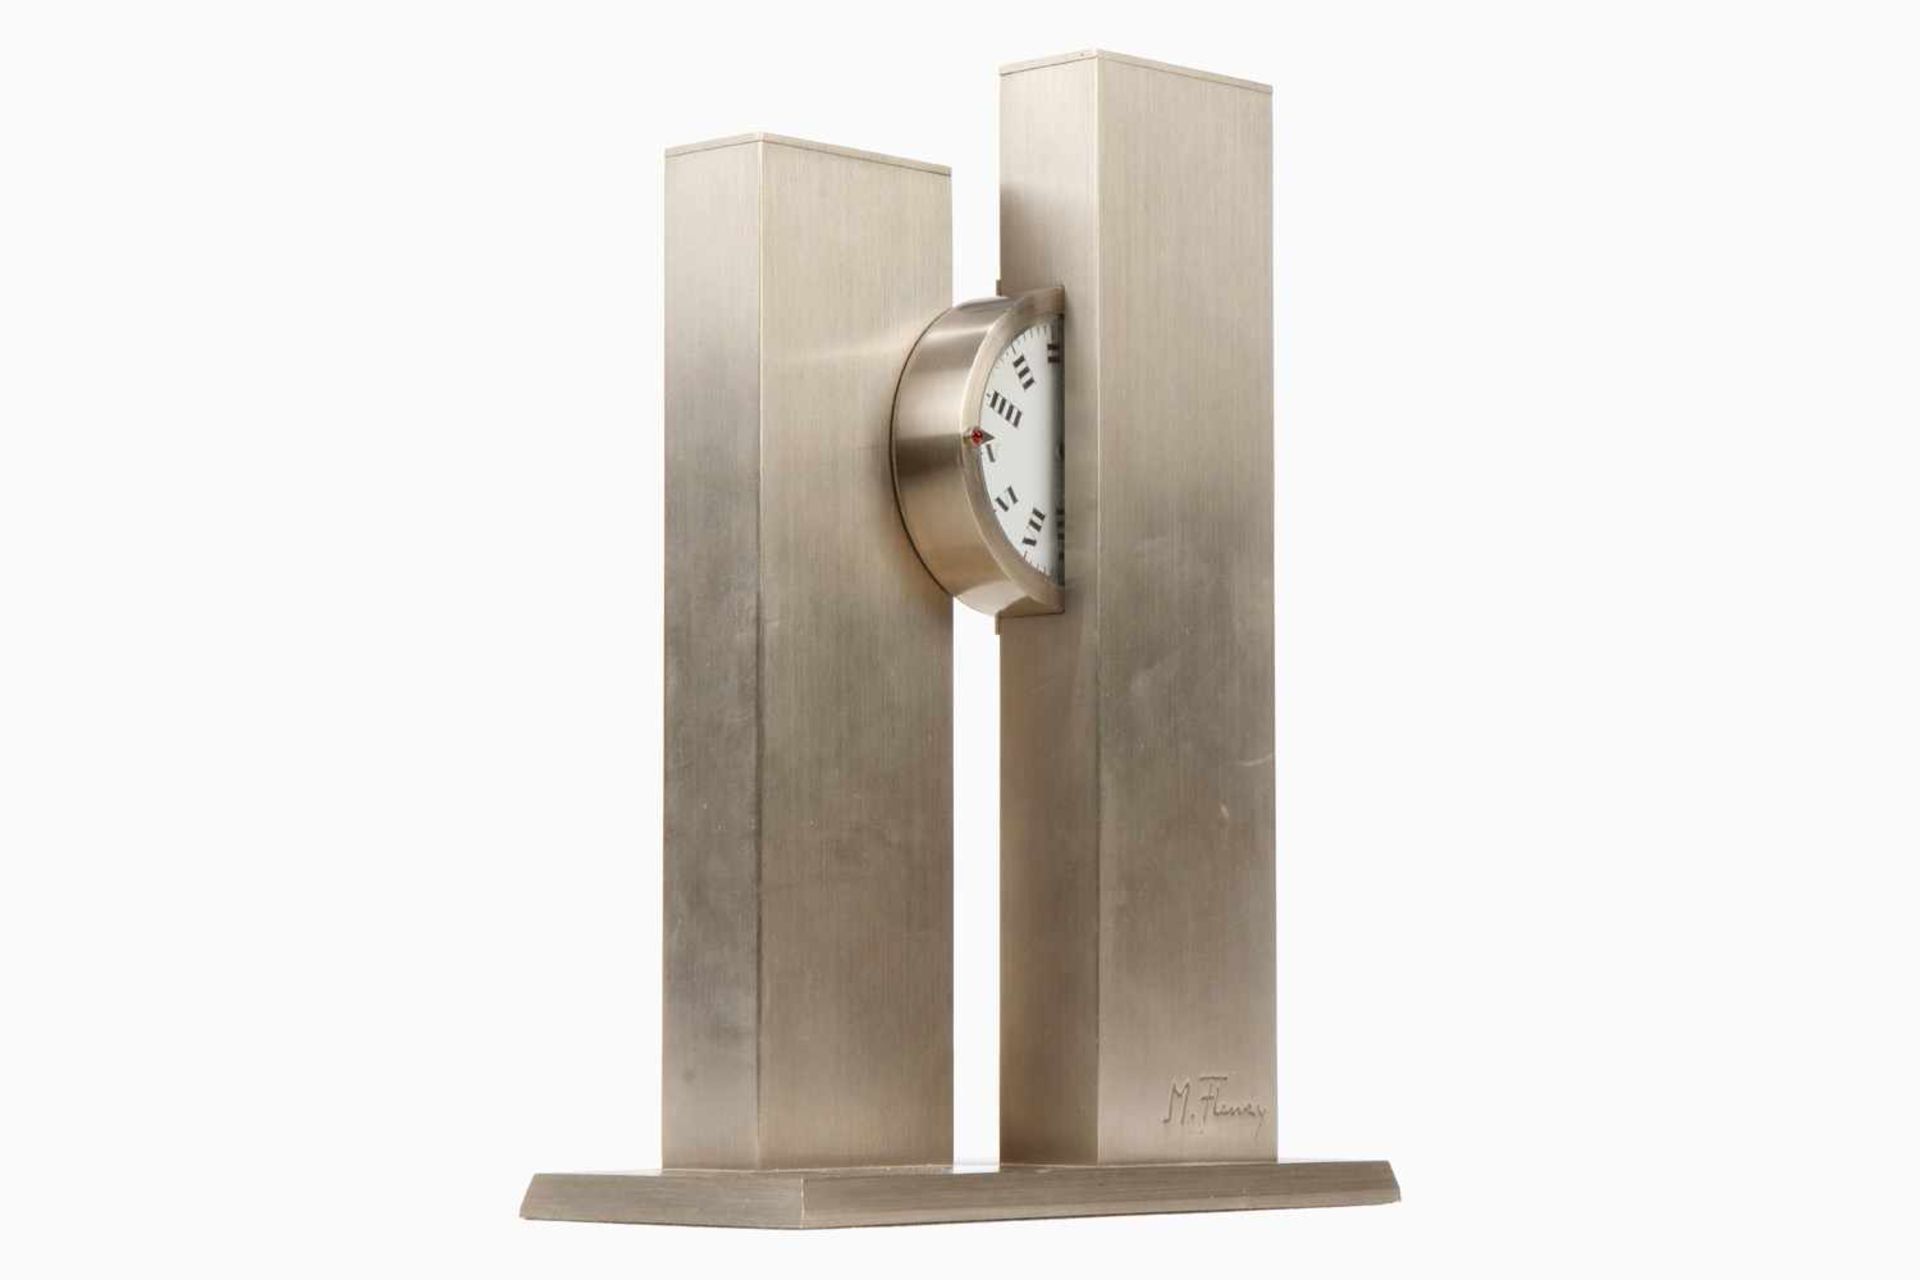 "M. Fleury" Design-Tischuhr "Horloge Nycthémérale", signiert "M. Fleury", limitierte Auflage, 132/